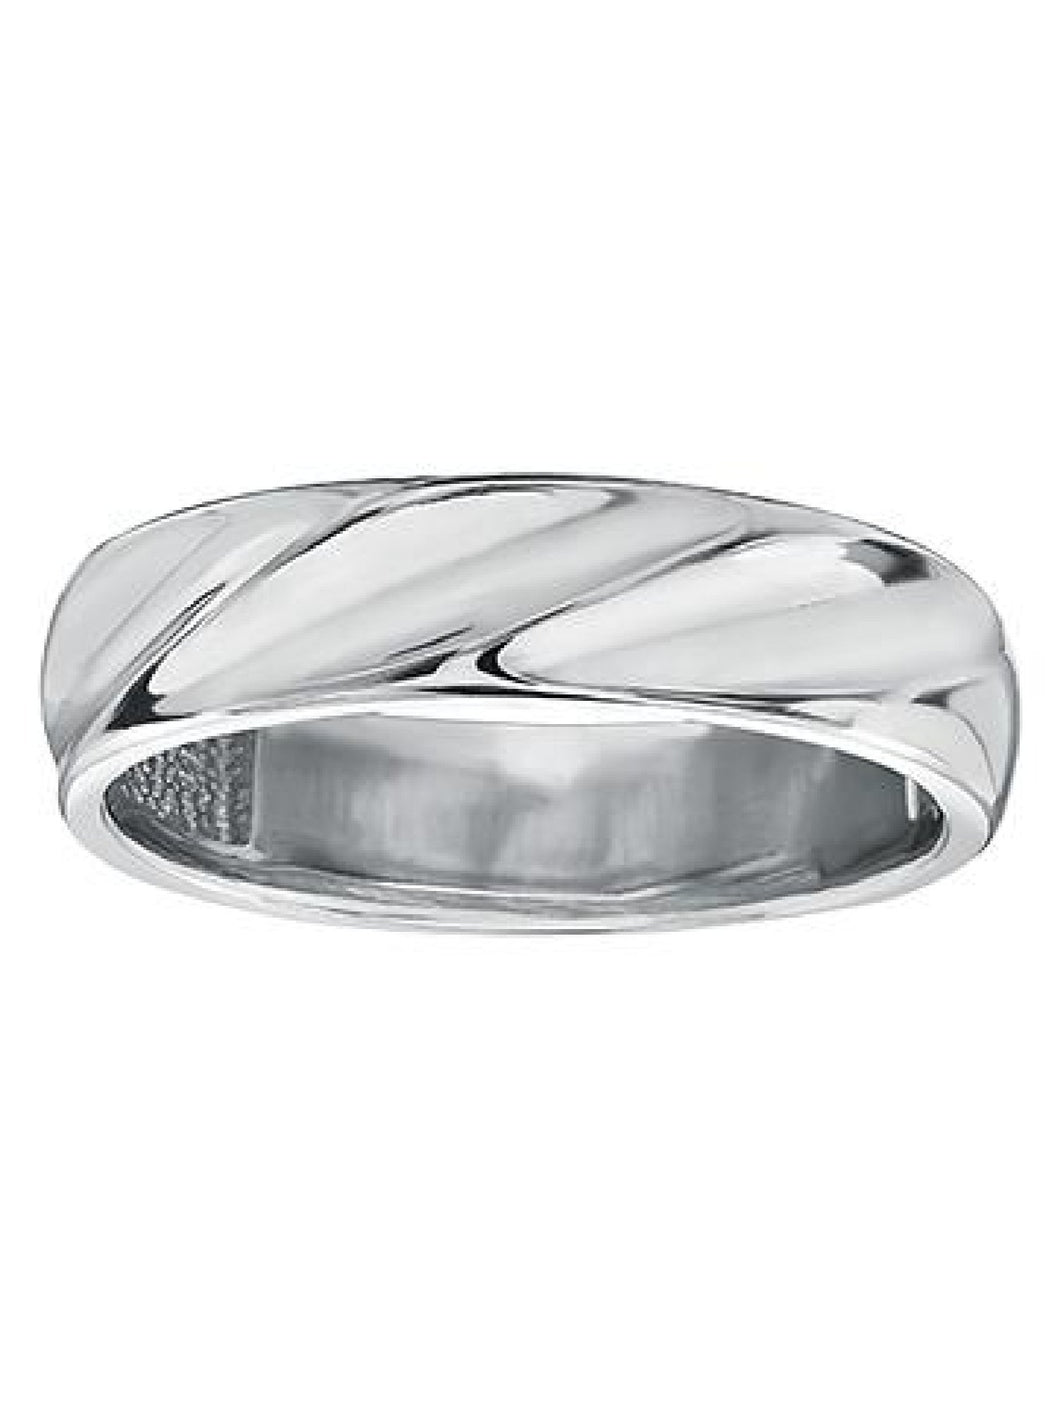 130220 10KT White Gold Men's Ring